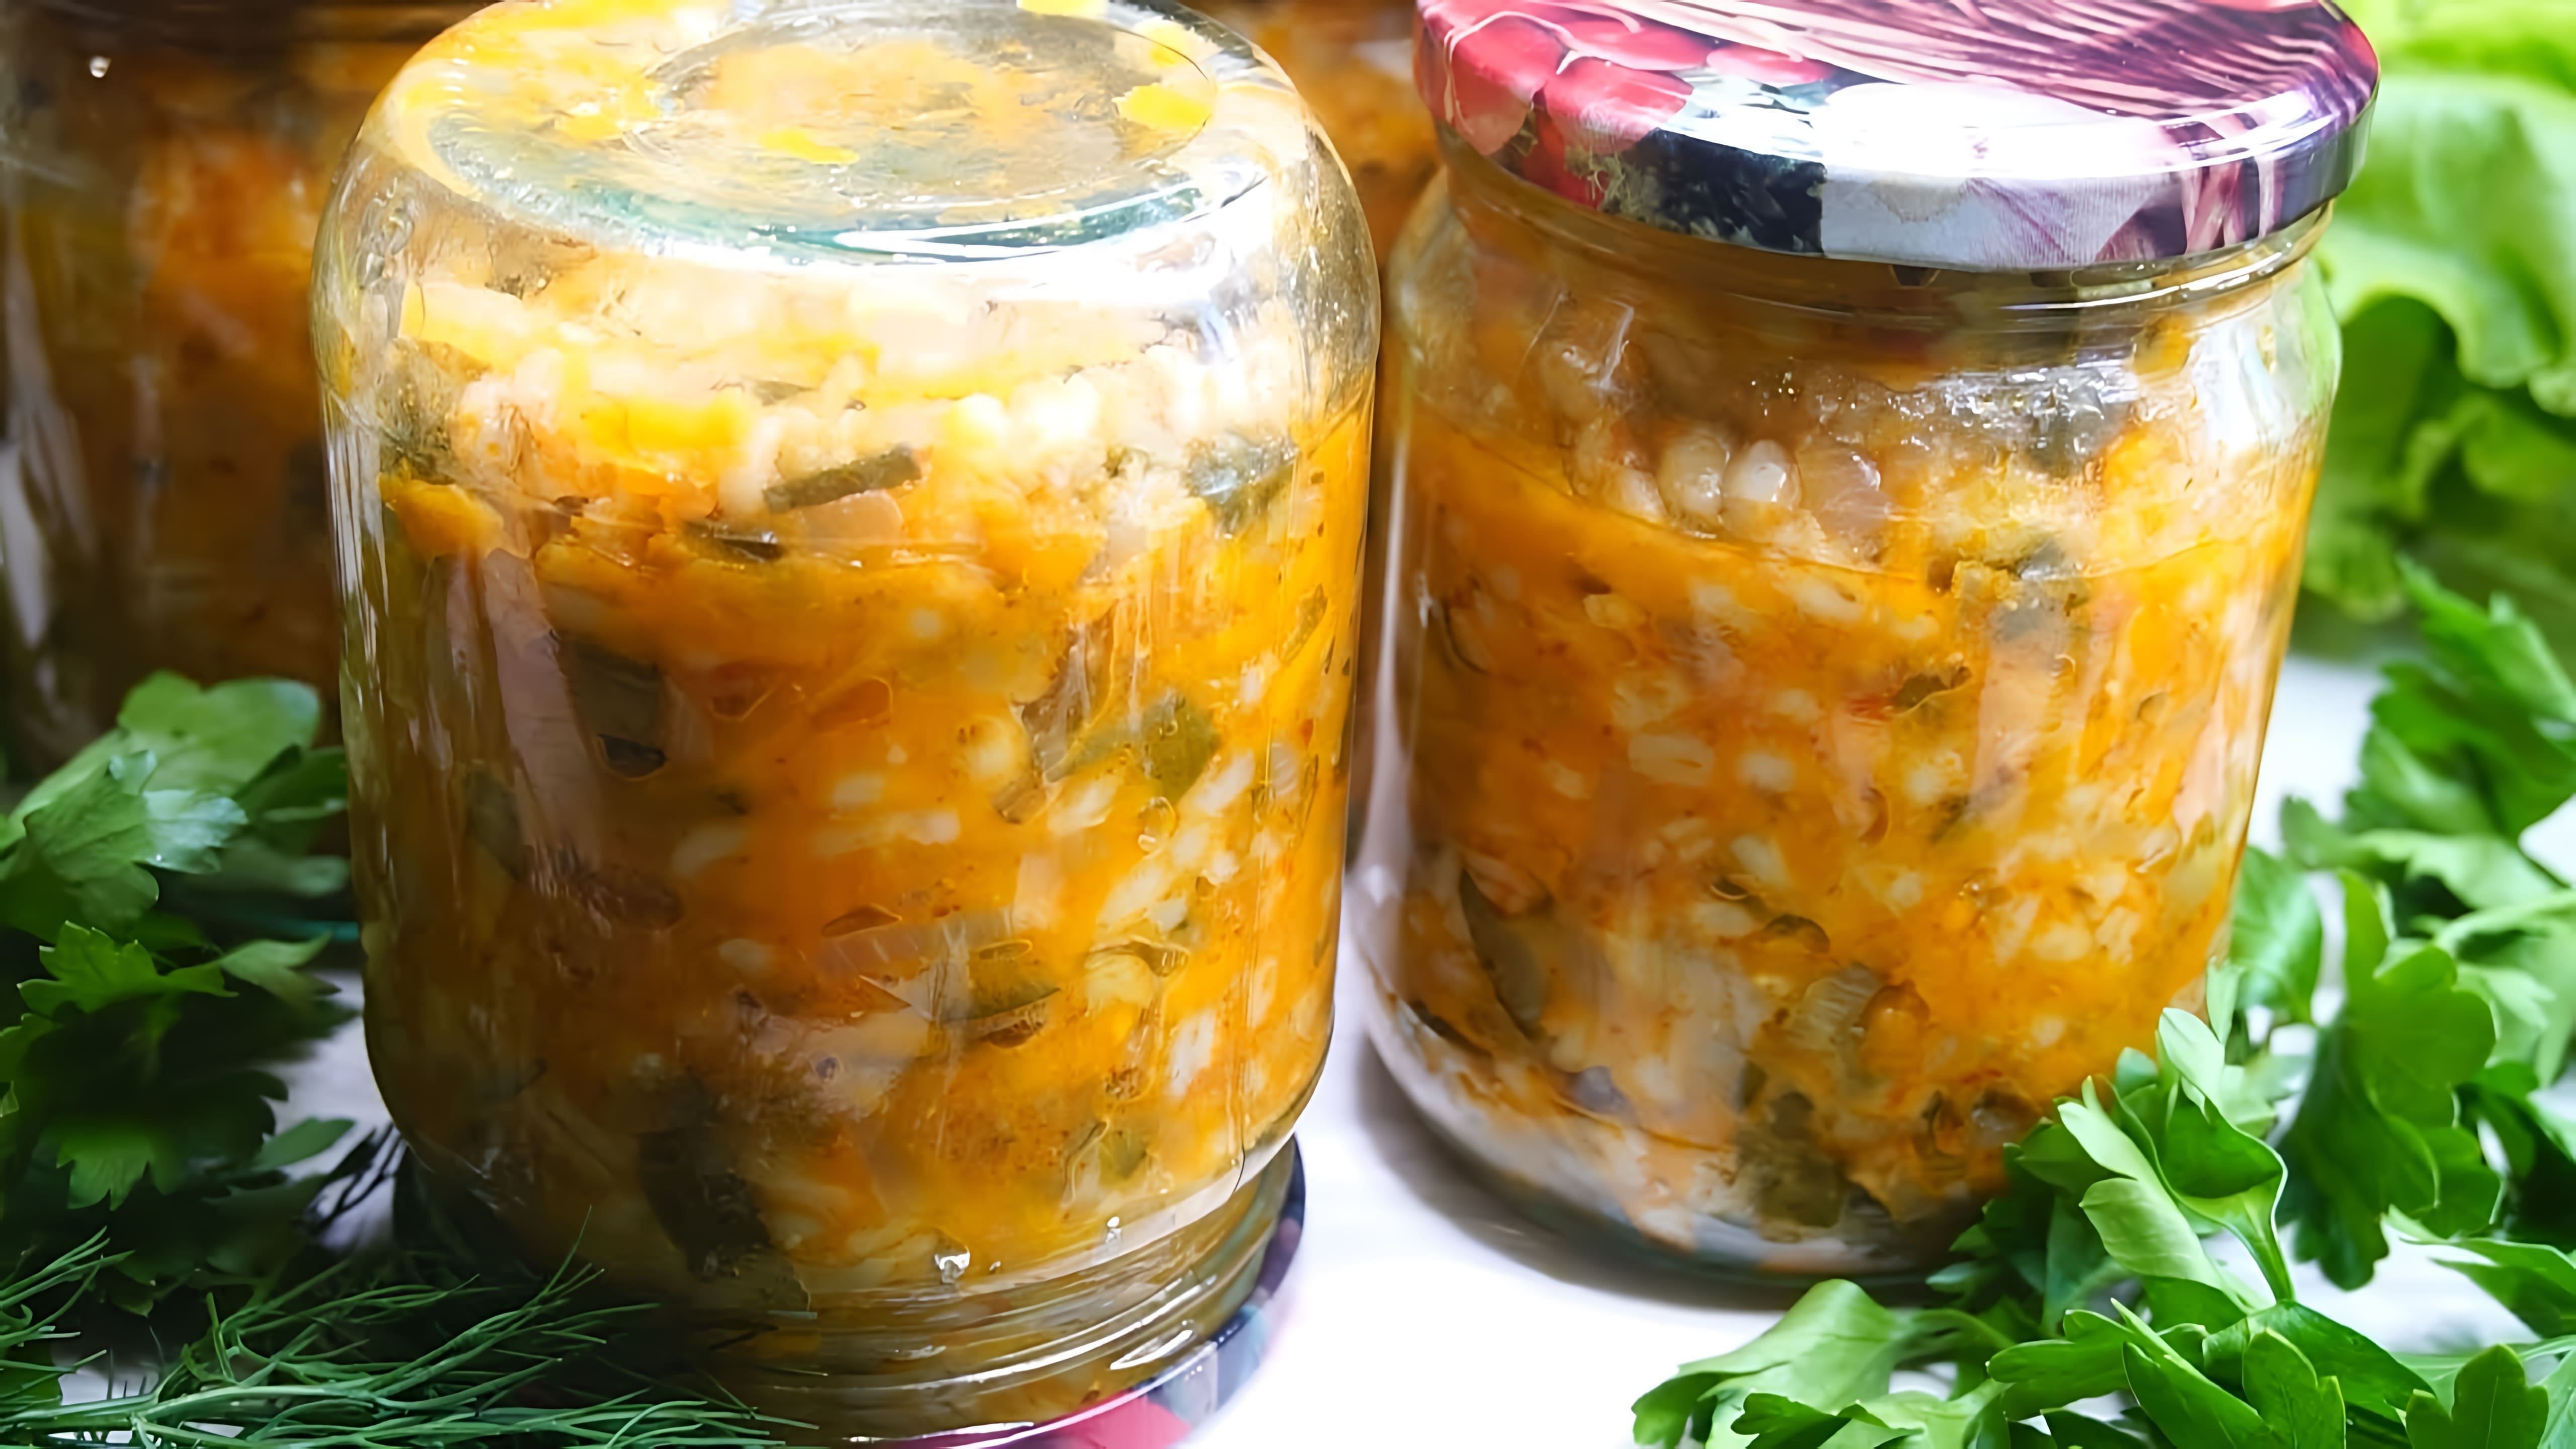 Видео рецепт для приготовления маринованного супа из свеклы и ячменя (расольник) в больших количествах для консервирования и хранения на зиму